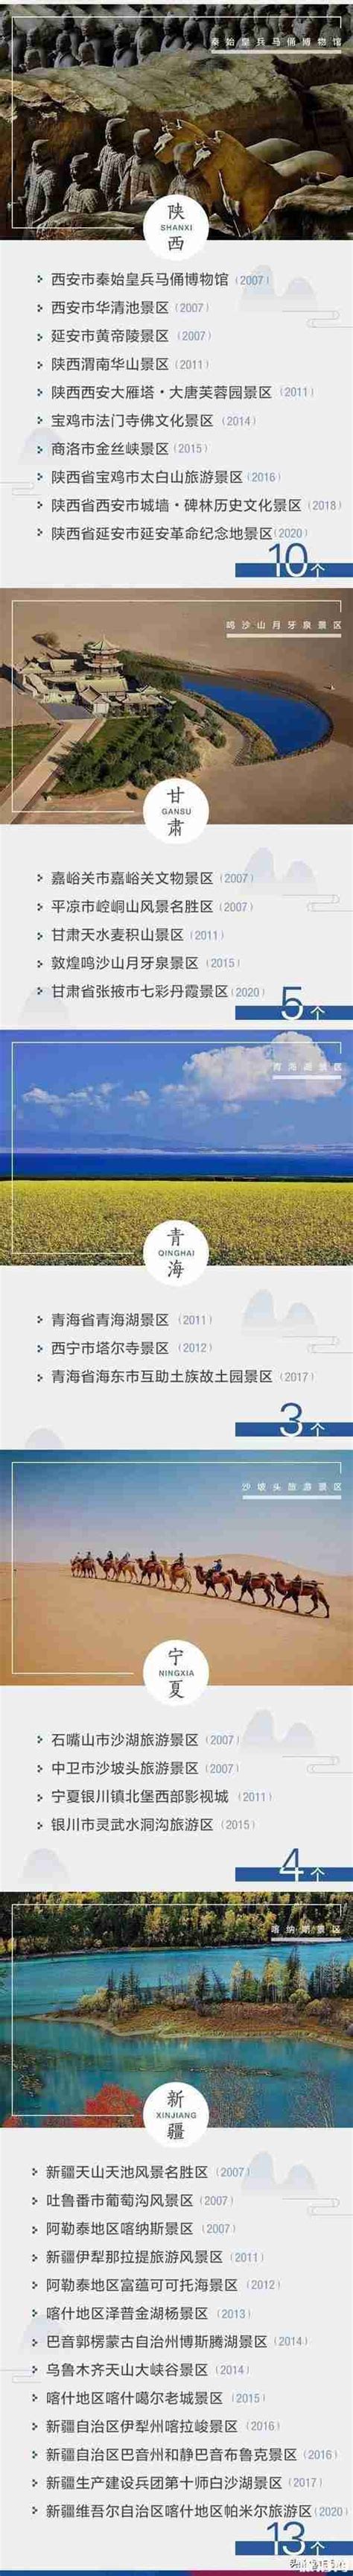 中国5A旅游景区名单2020_旅泊网